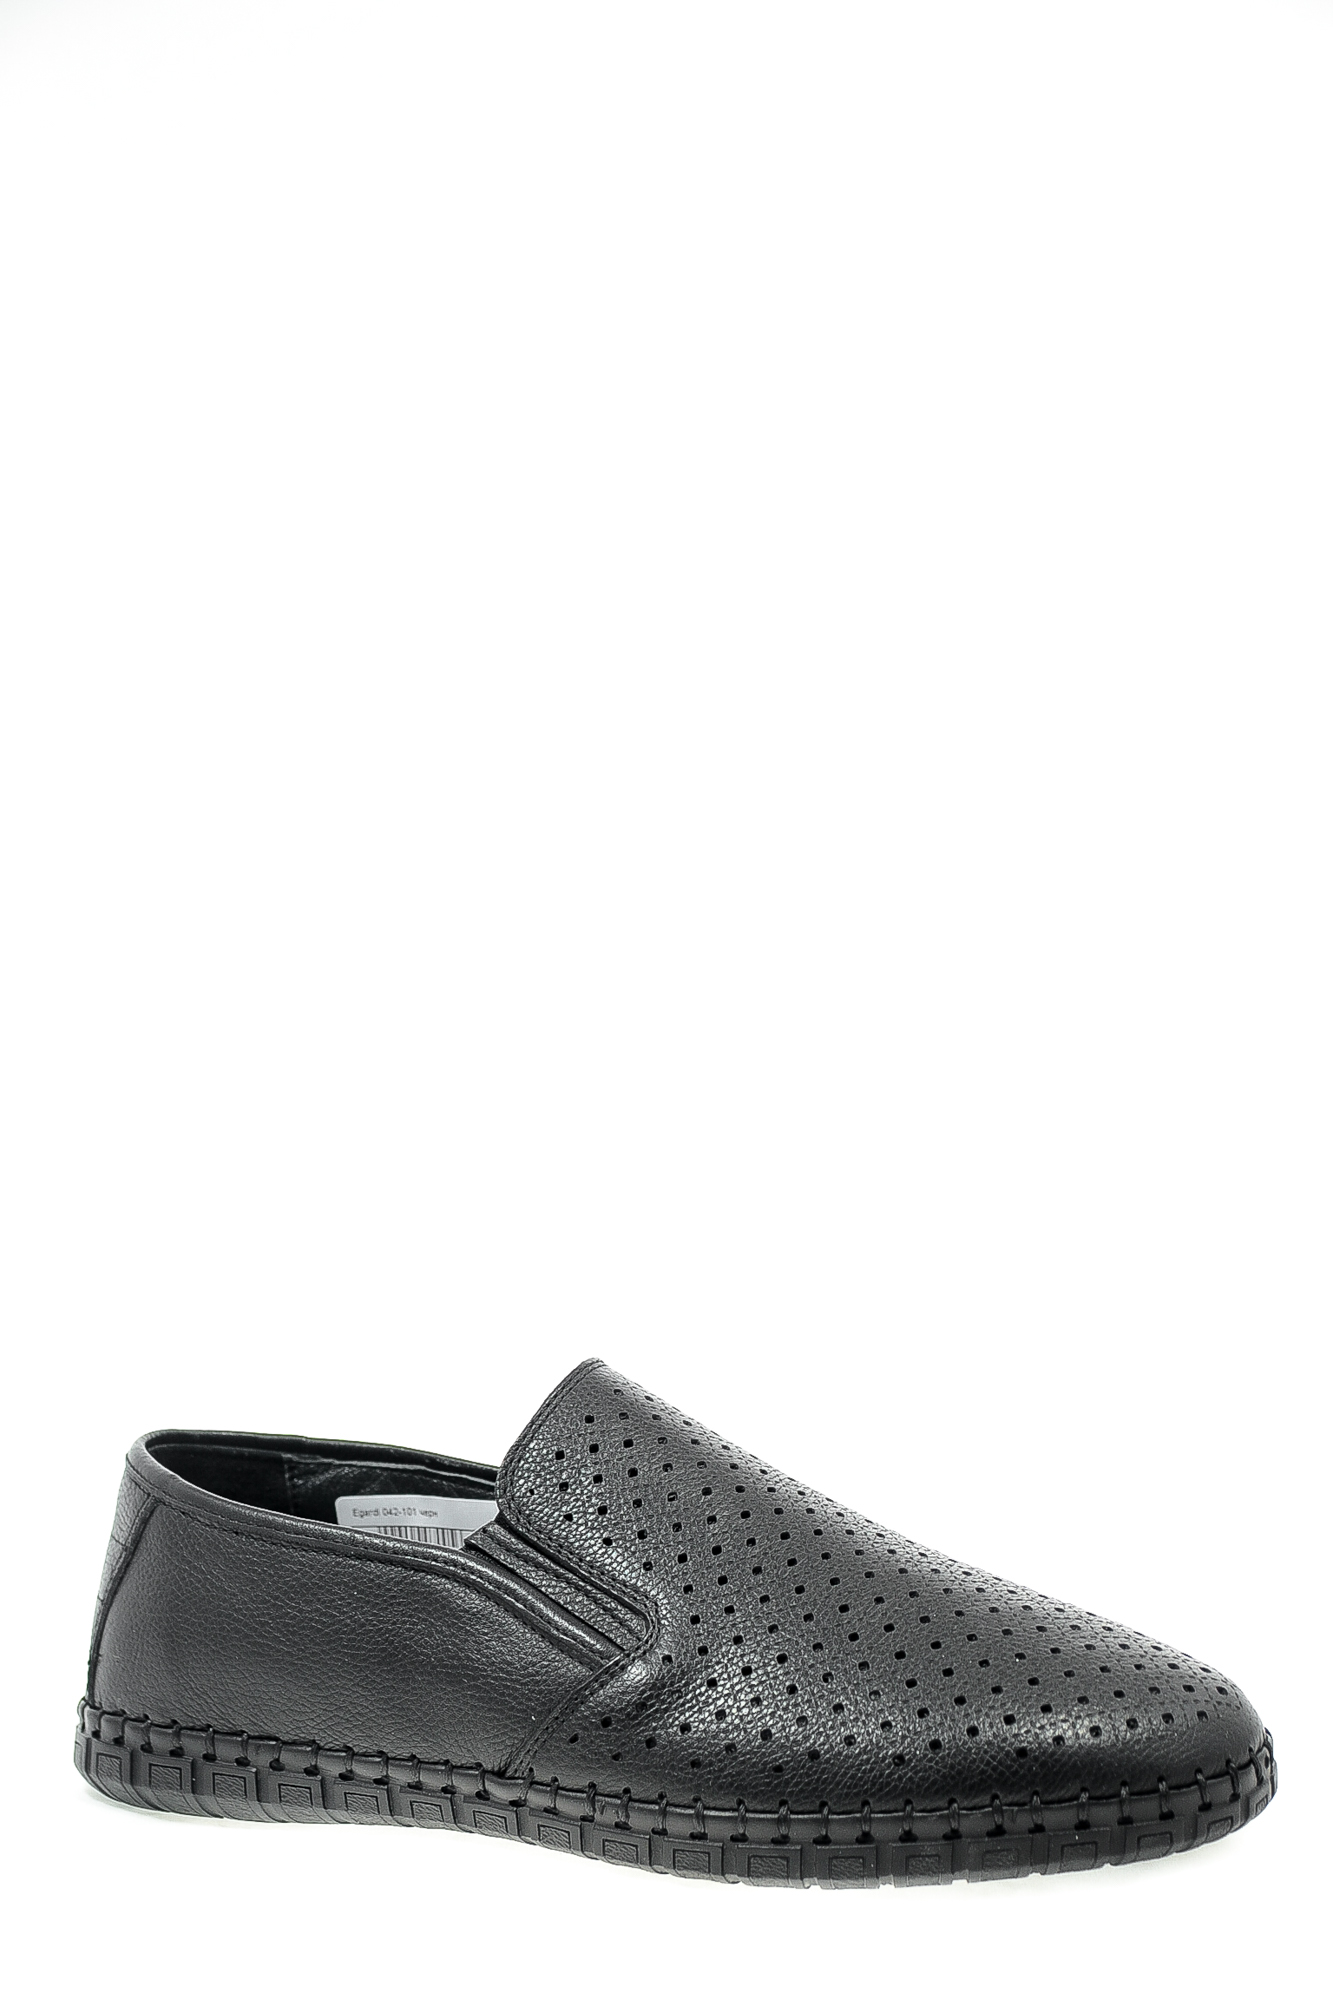 Туфли натуральная кожа Egardi Egardi 042-101 черн цвет черный.